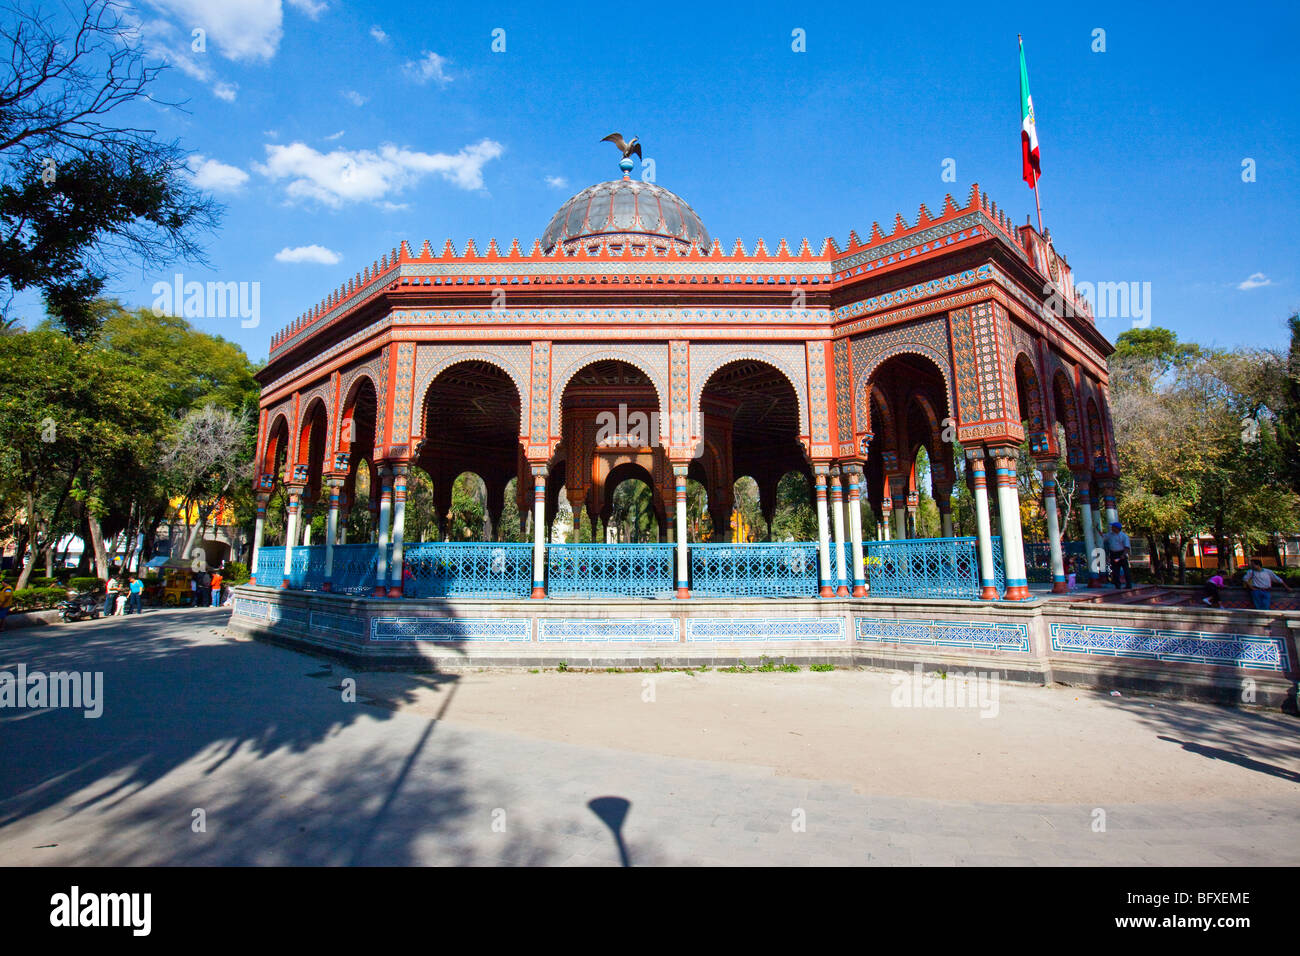 Kiosco Maure oder der maurische Kiosk in Santa Maria la Ribera Viertel von Mexiko-Stadt Stockfoto